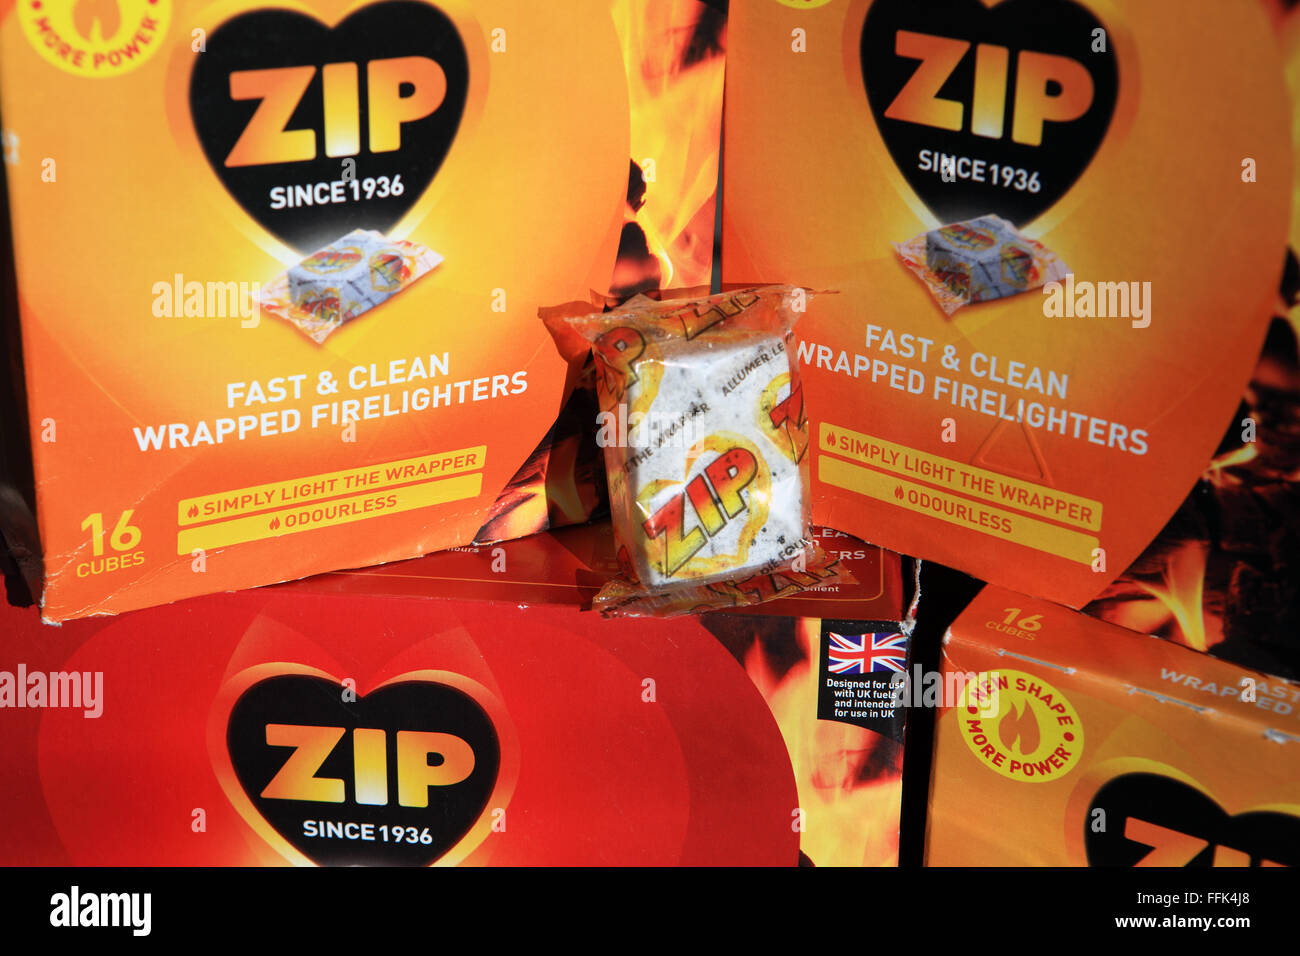 Zip firelighters Stock Photo